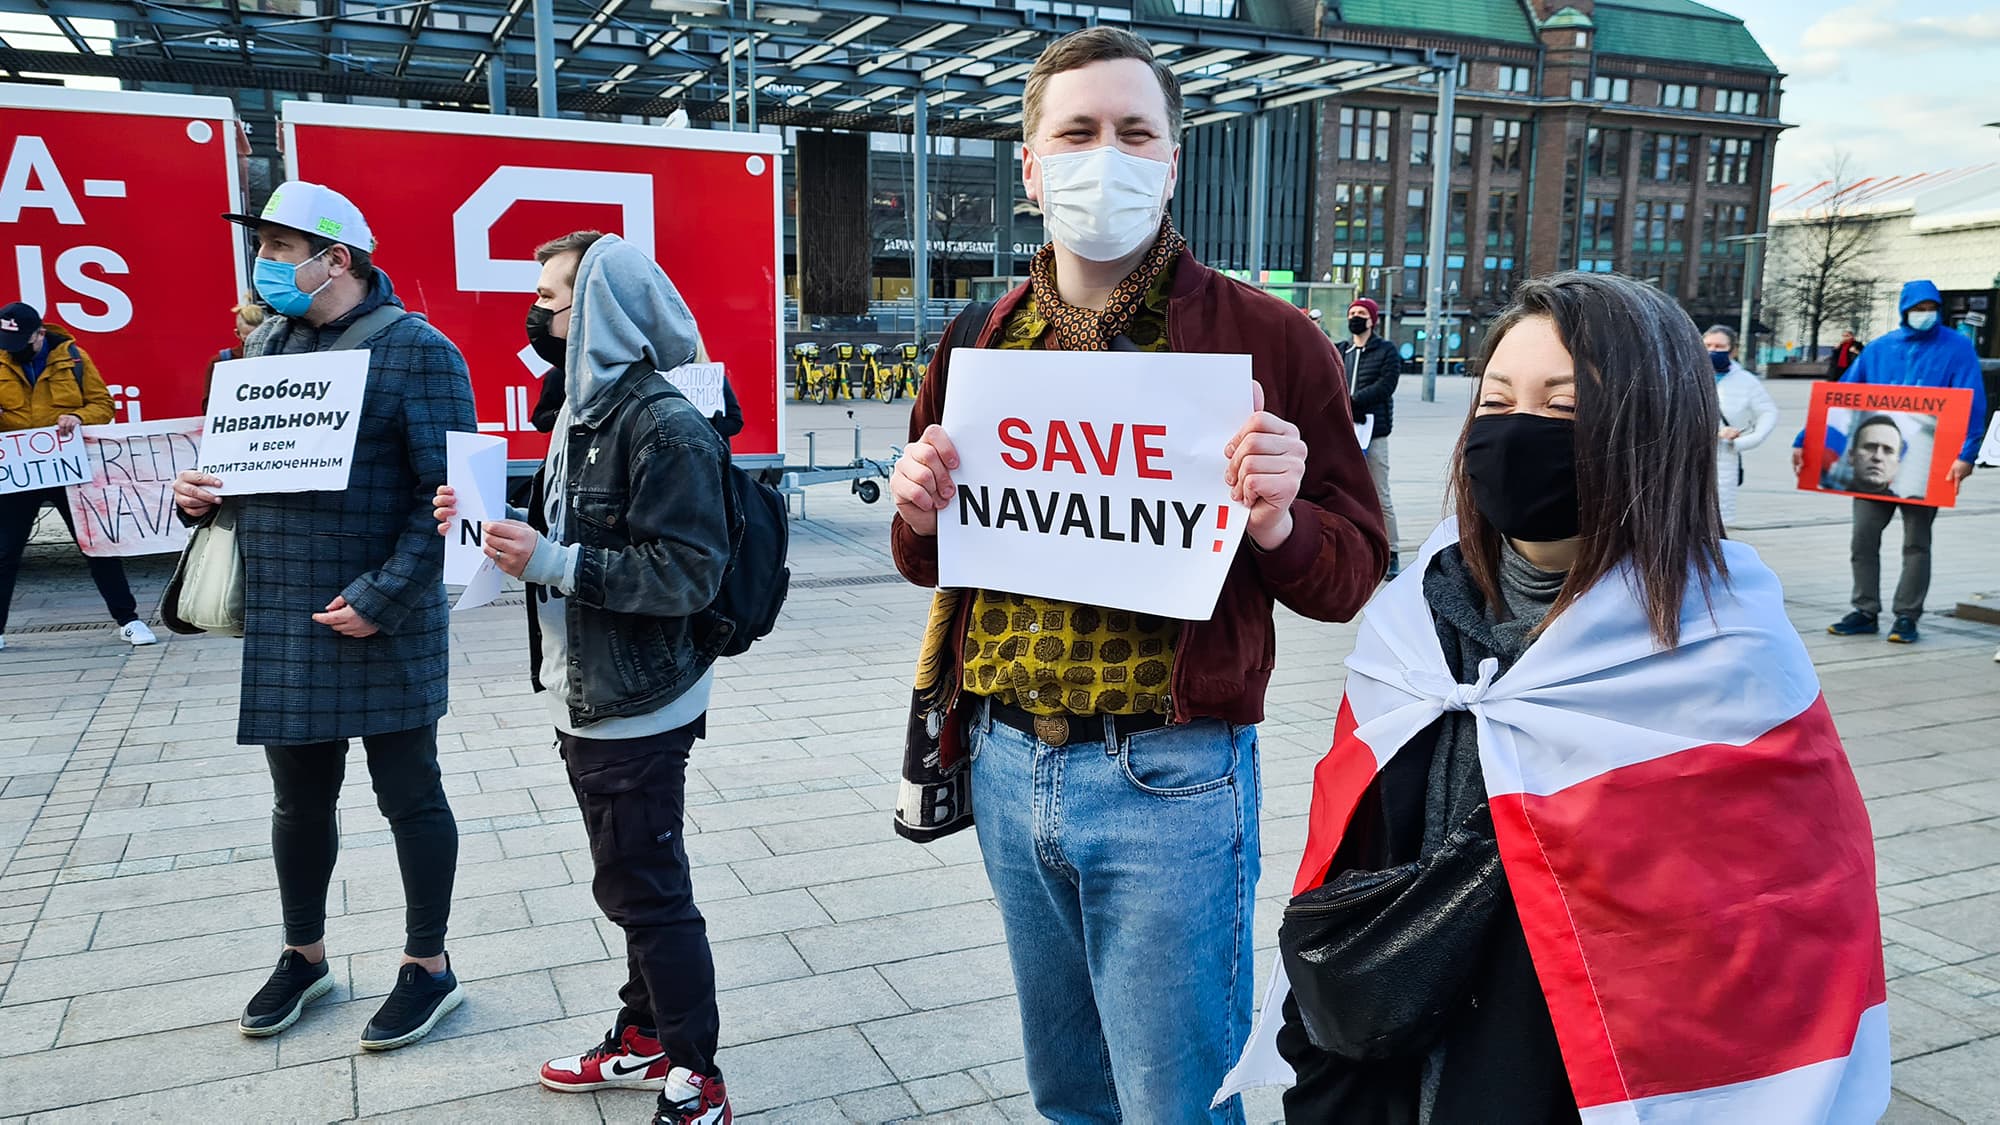 Noin 120 henkilö osoittamassa mieltään Aleksei Navalnyin vapauttamisen puolesta Helsingin Narinkkatorilla.